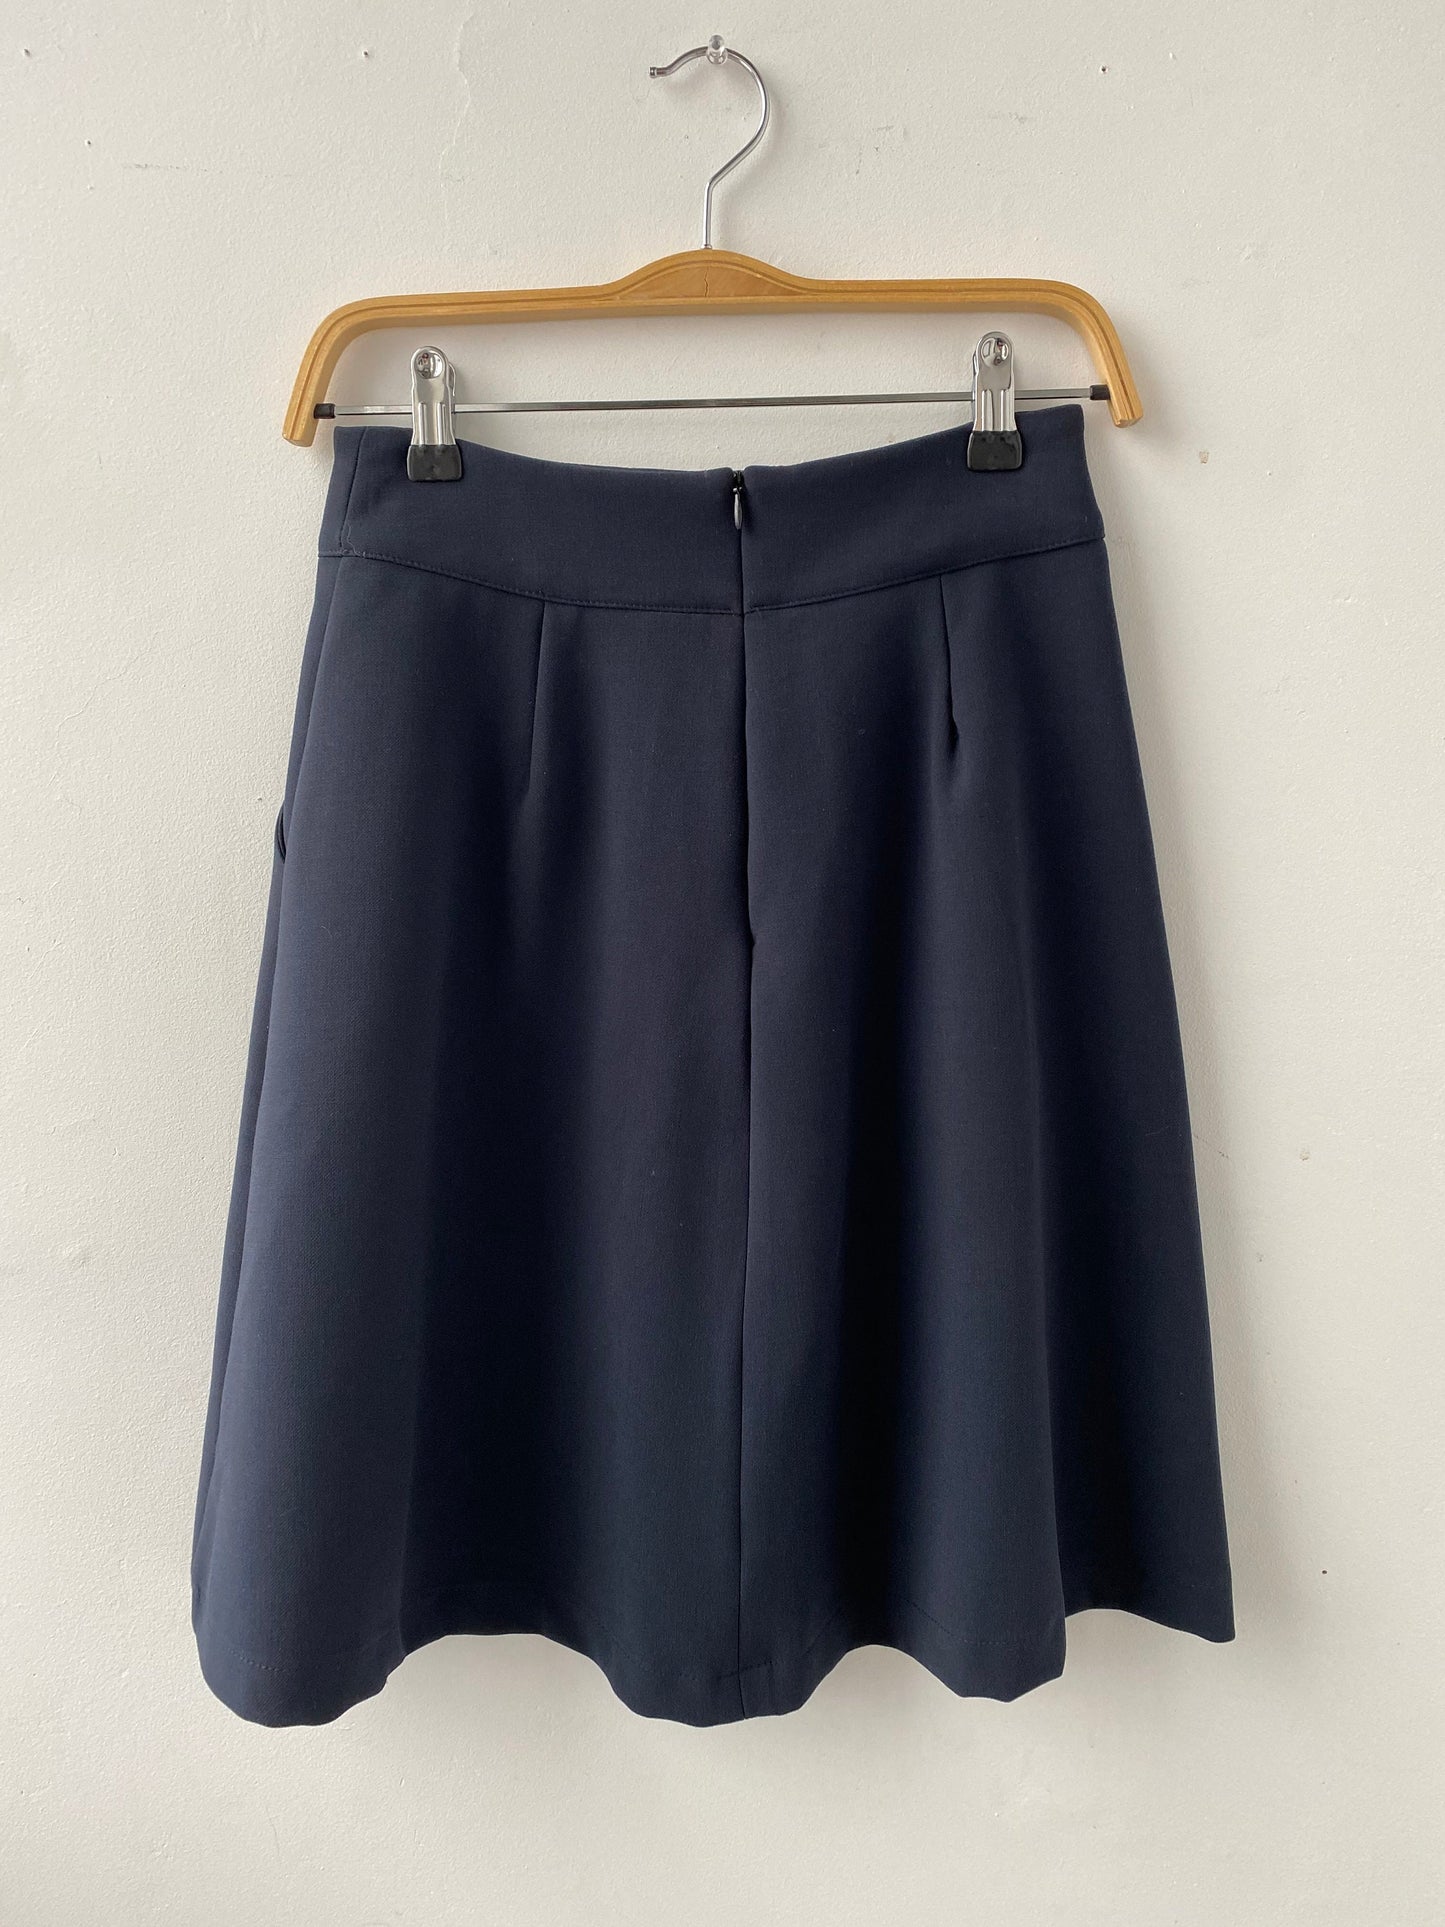 Chelsea skirt